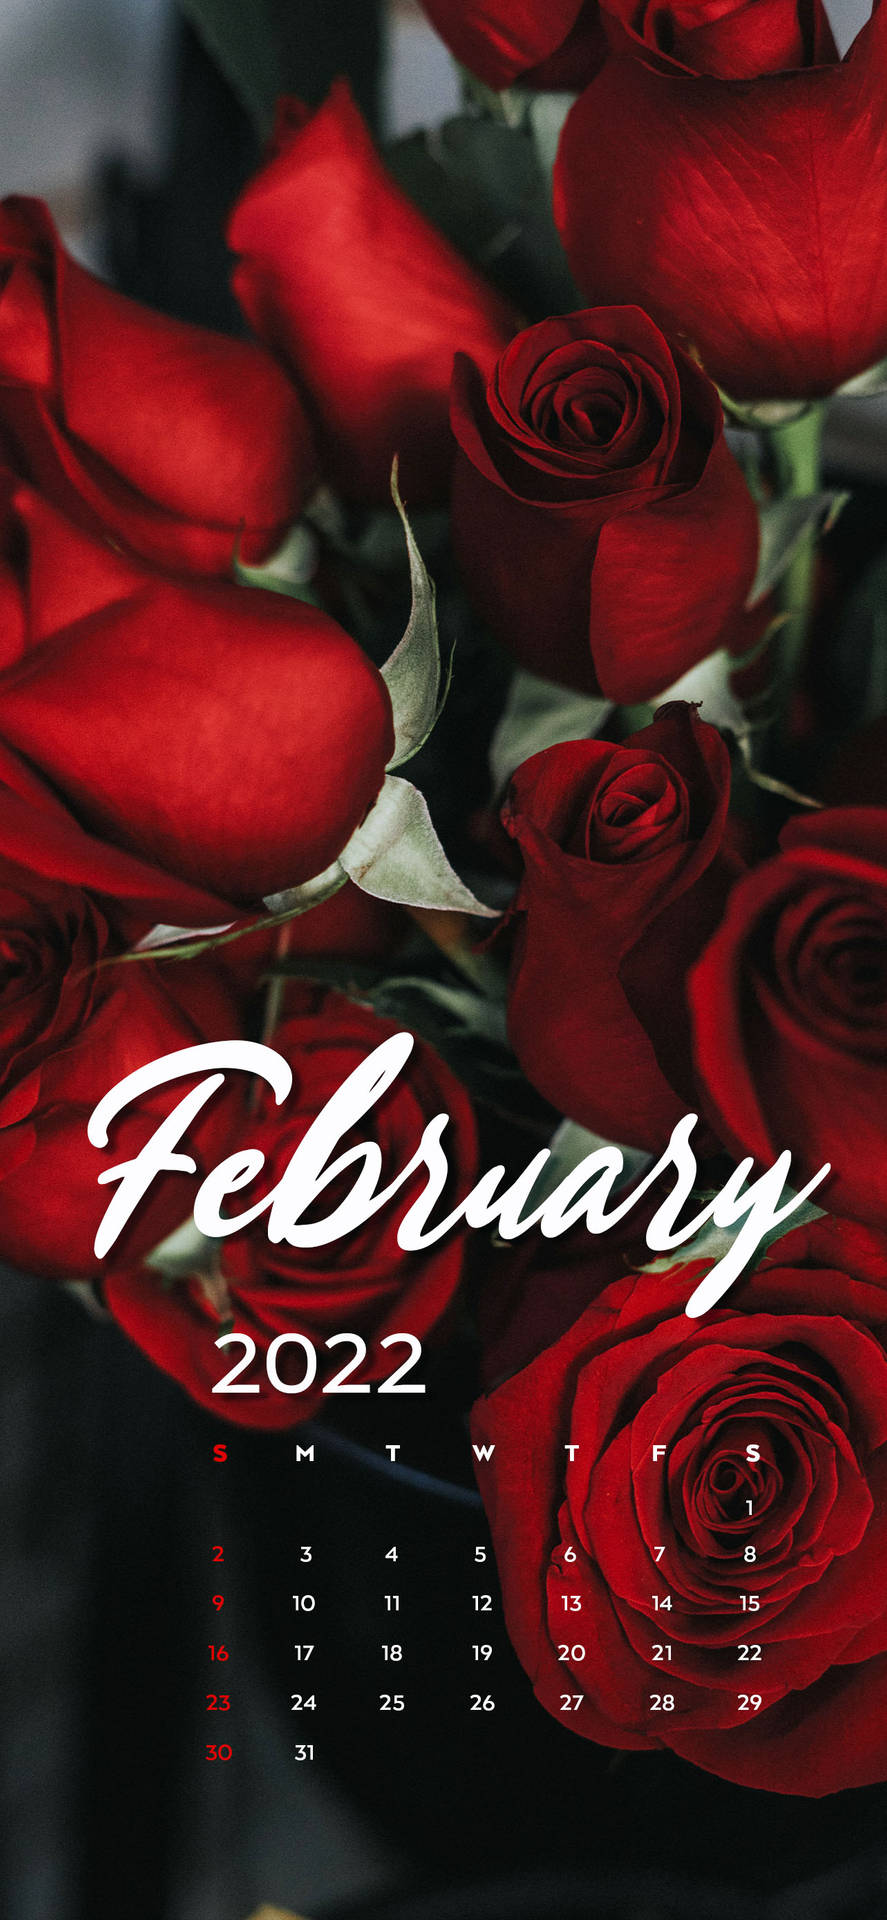 February 2022 Red Roses Calendar